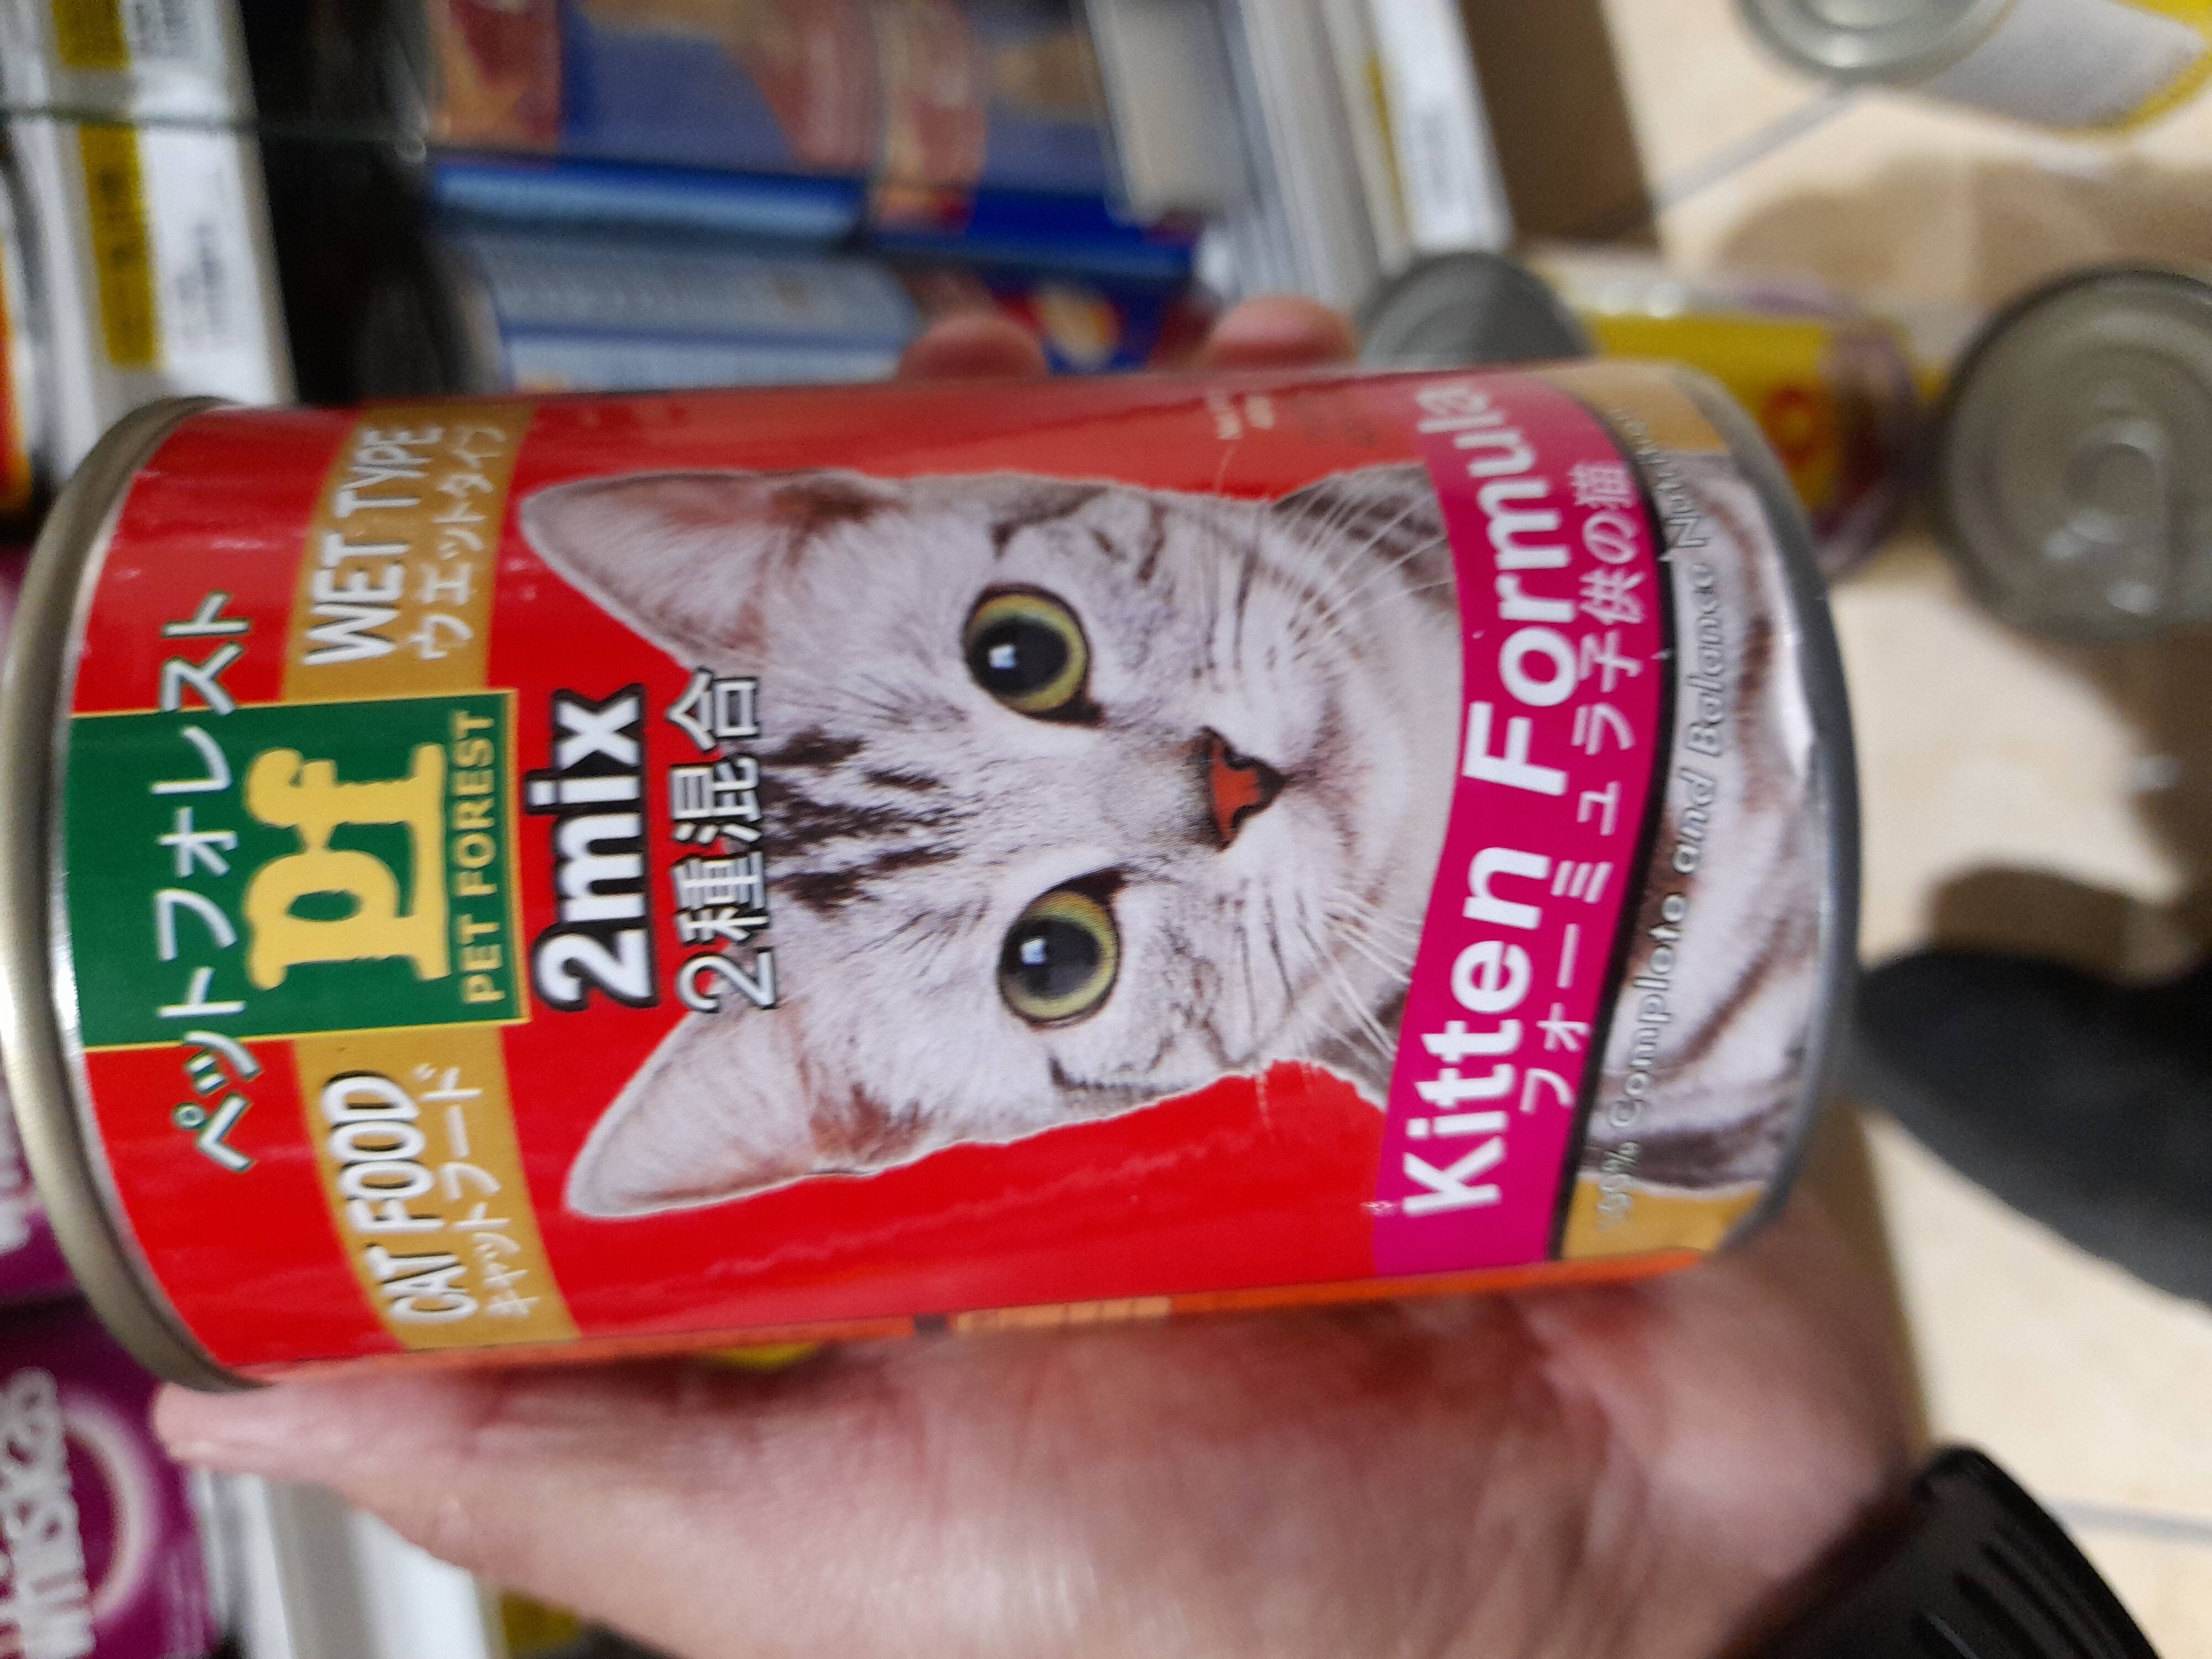 Cat food PF kitten formula 400gr - Product - so